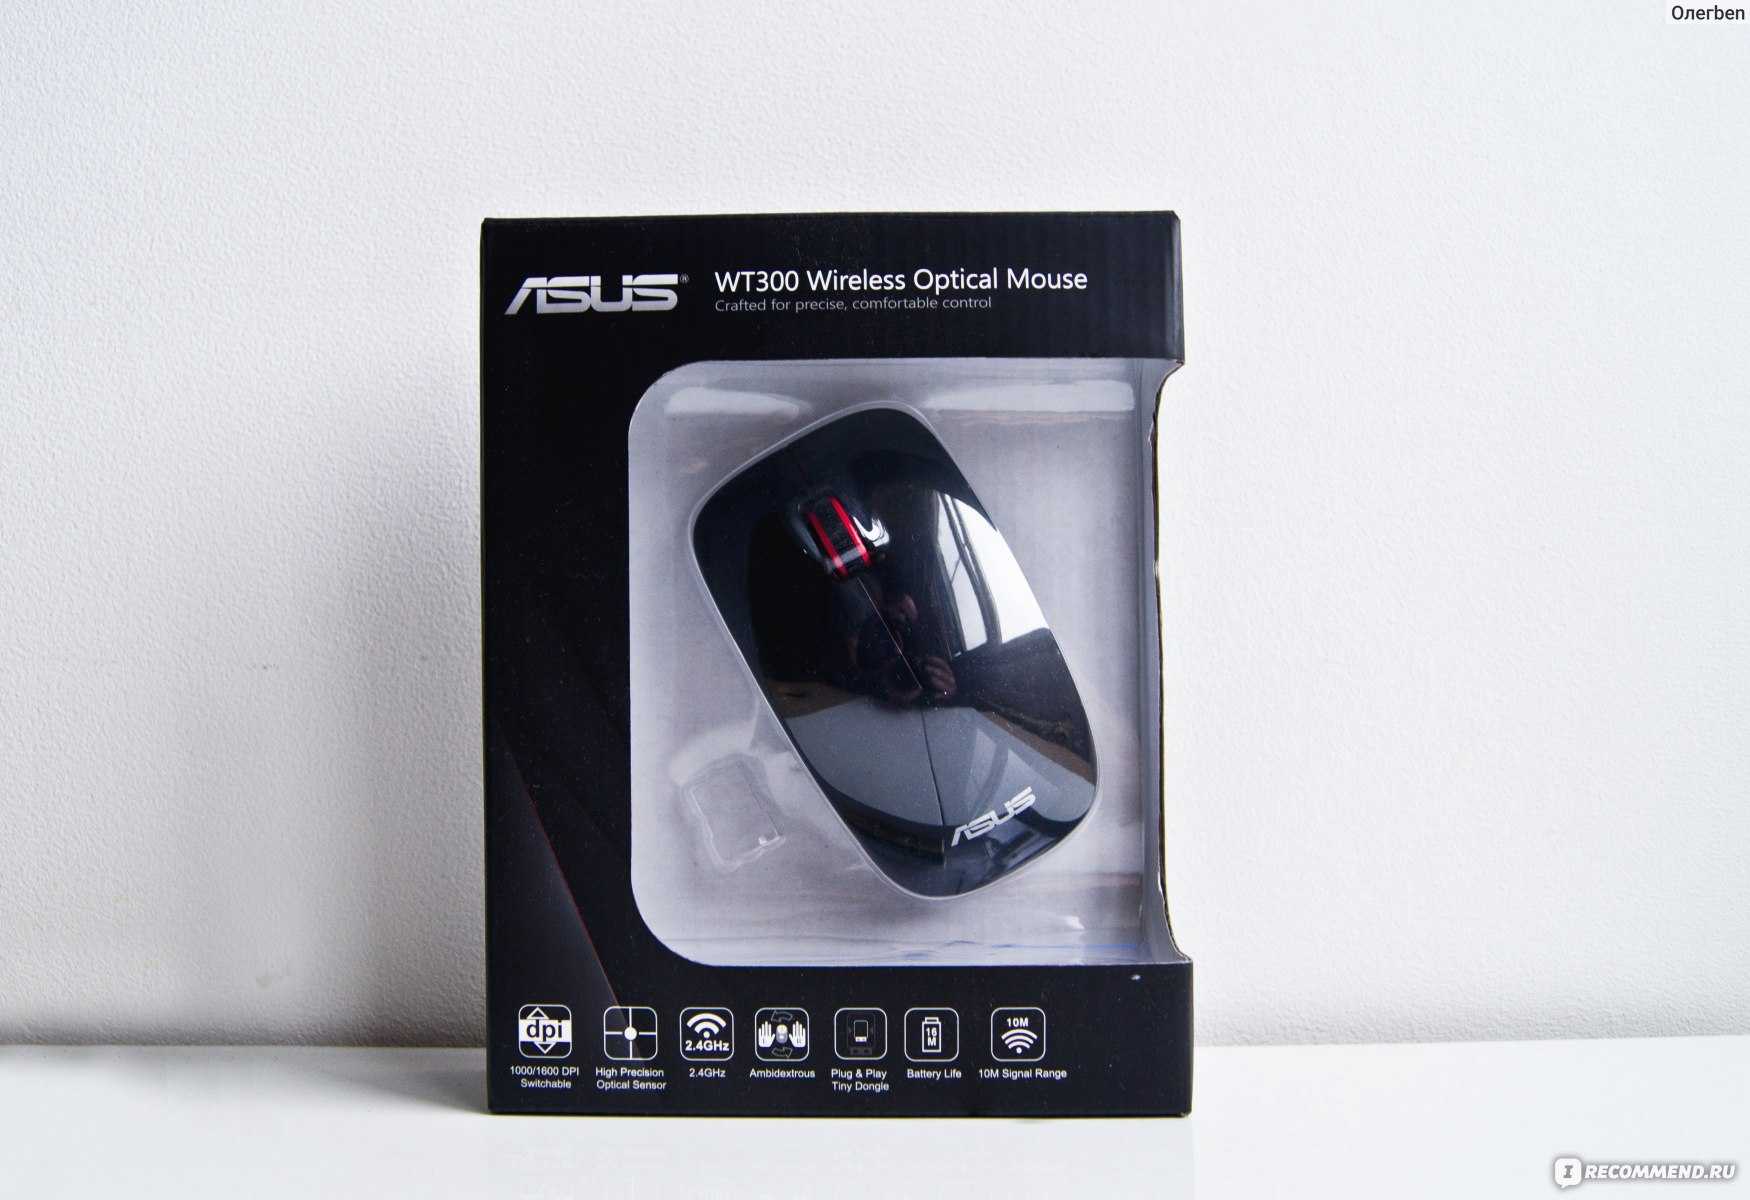 Asus wt415 optical wireless mouse grey usb (серебристый) - купить , скидки, цена, отзывы, обзор, характеристики - мыши